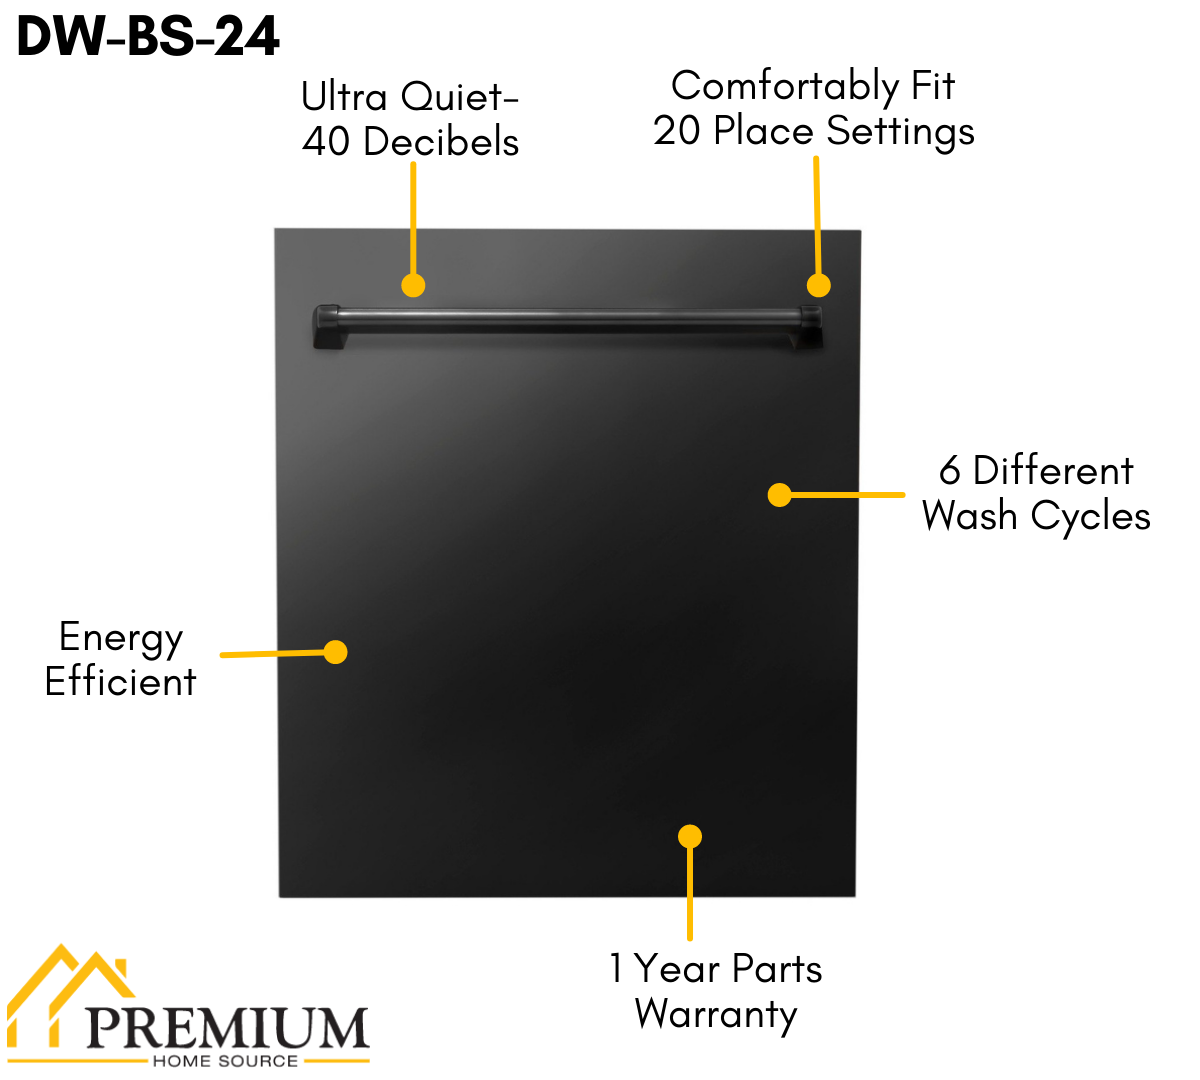 ZLINE Appliance Package - 48 in. Gas Range, Range Hood, Dishwasher in Black, 3KP-RGBRH48-DW